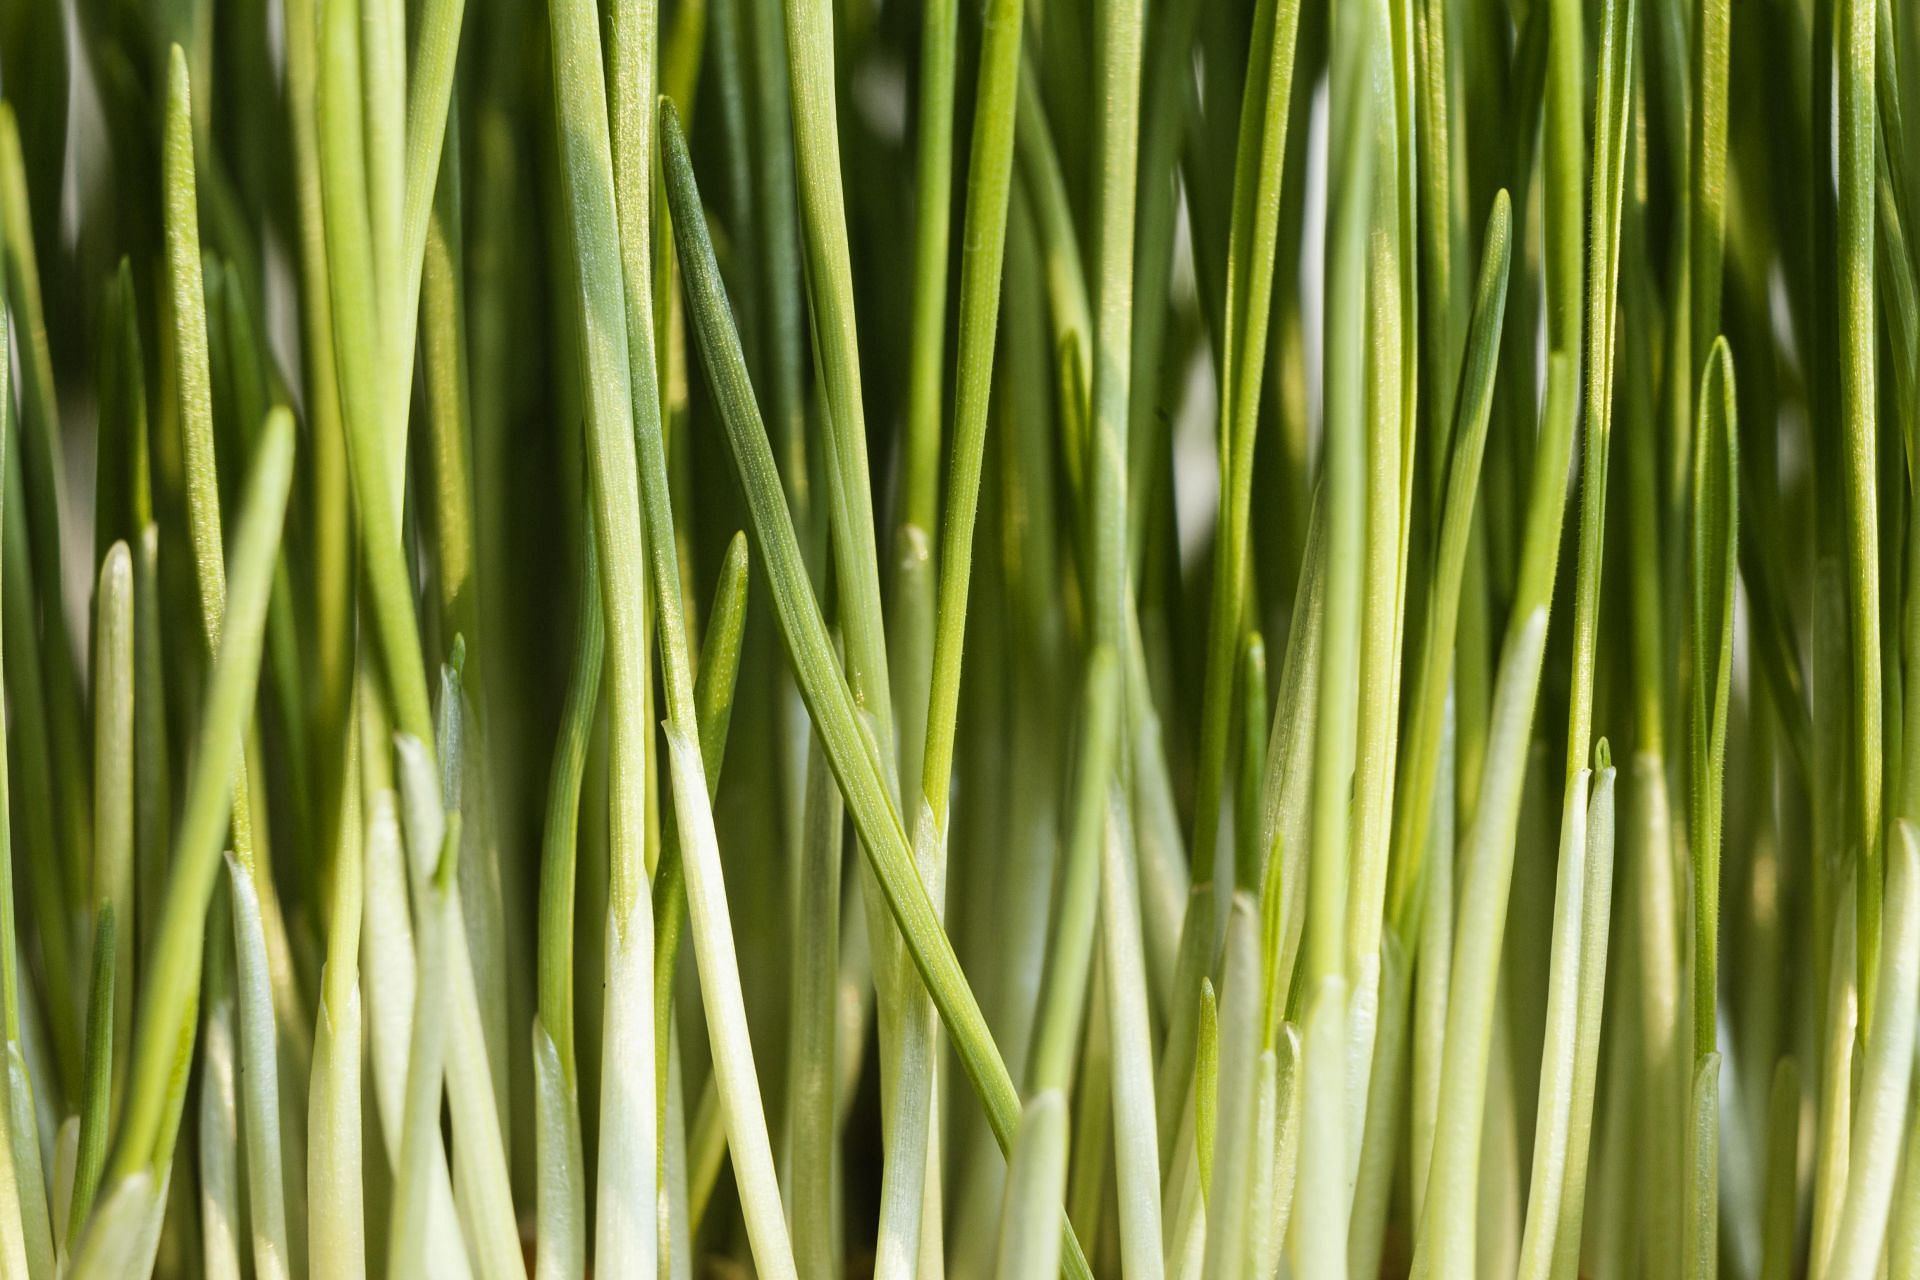 health benefits of lemongrass: (image via freepik)